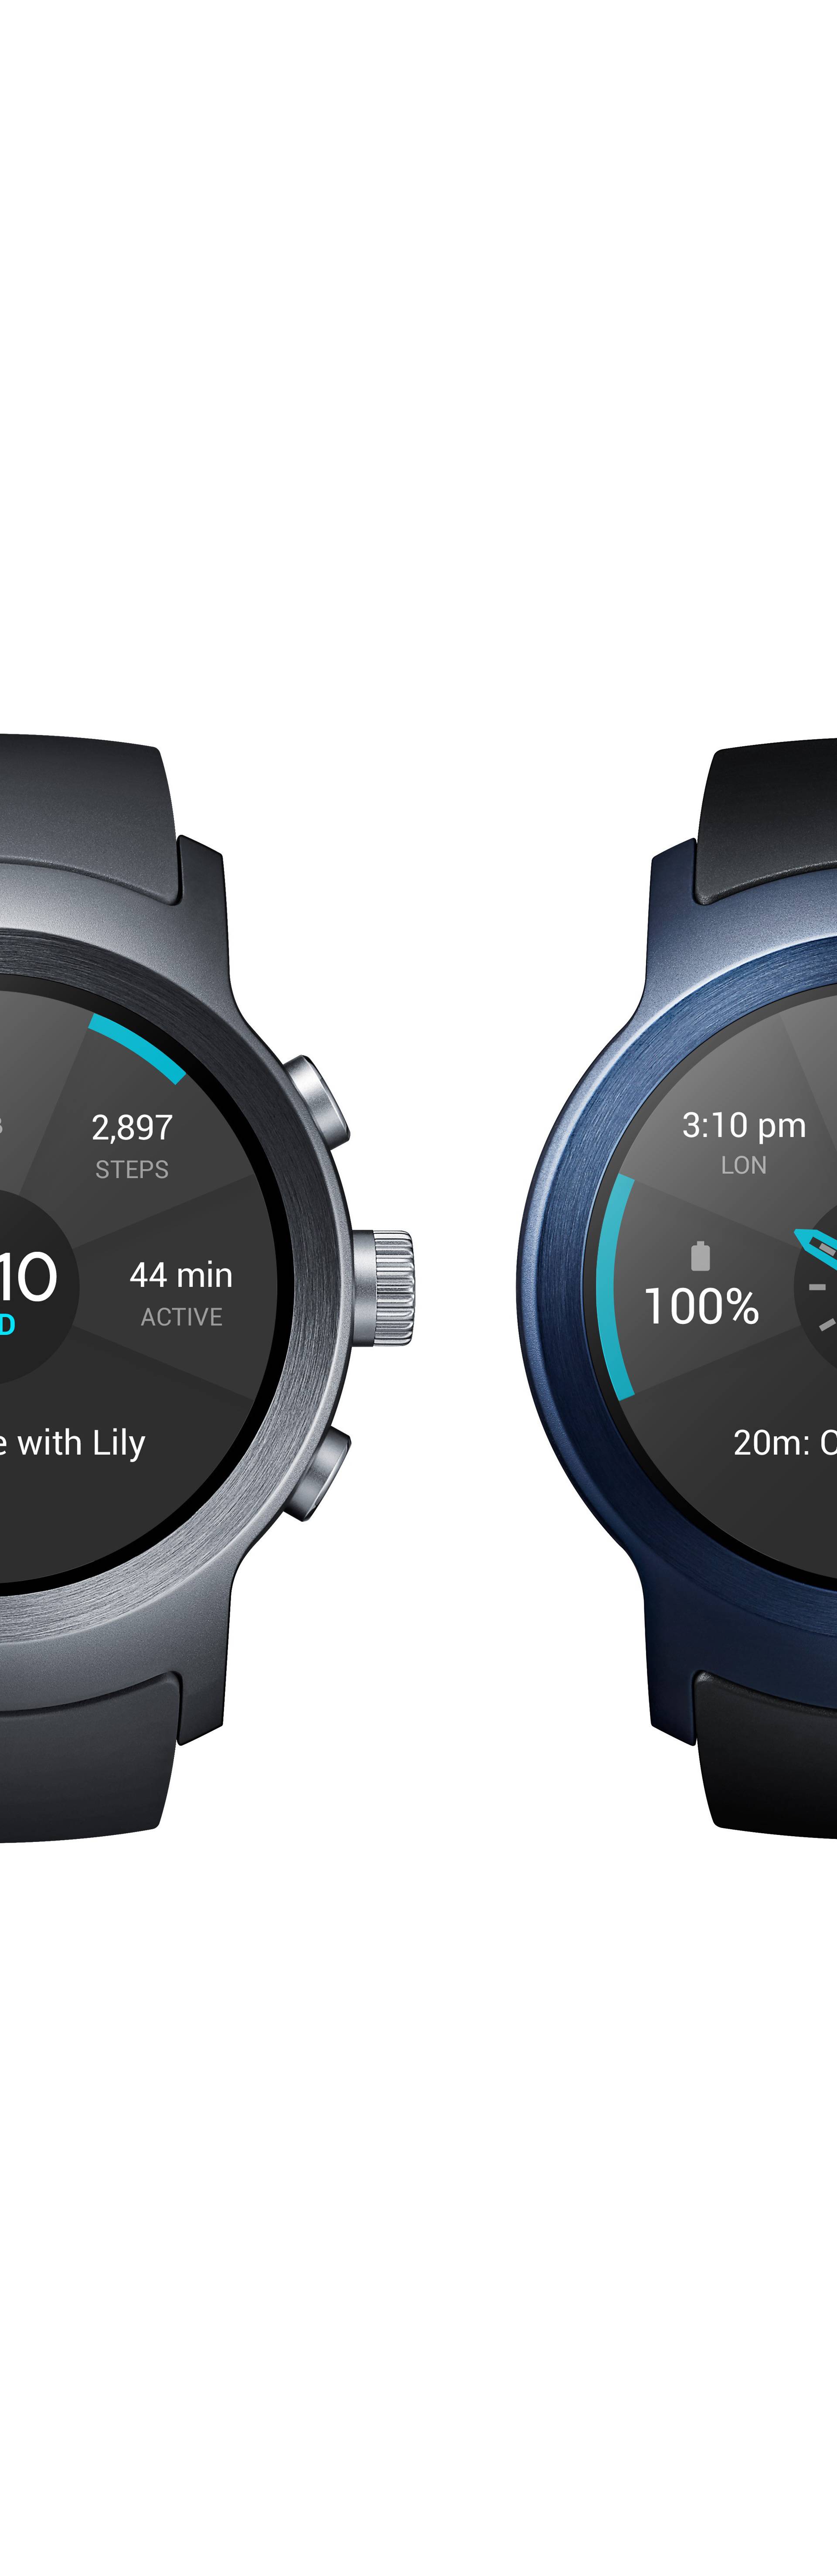 Spremni na razgovor: Android satovi postali su još pametniji